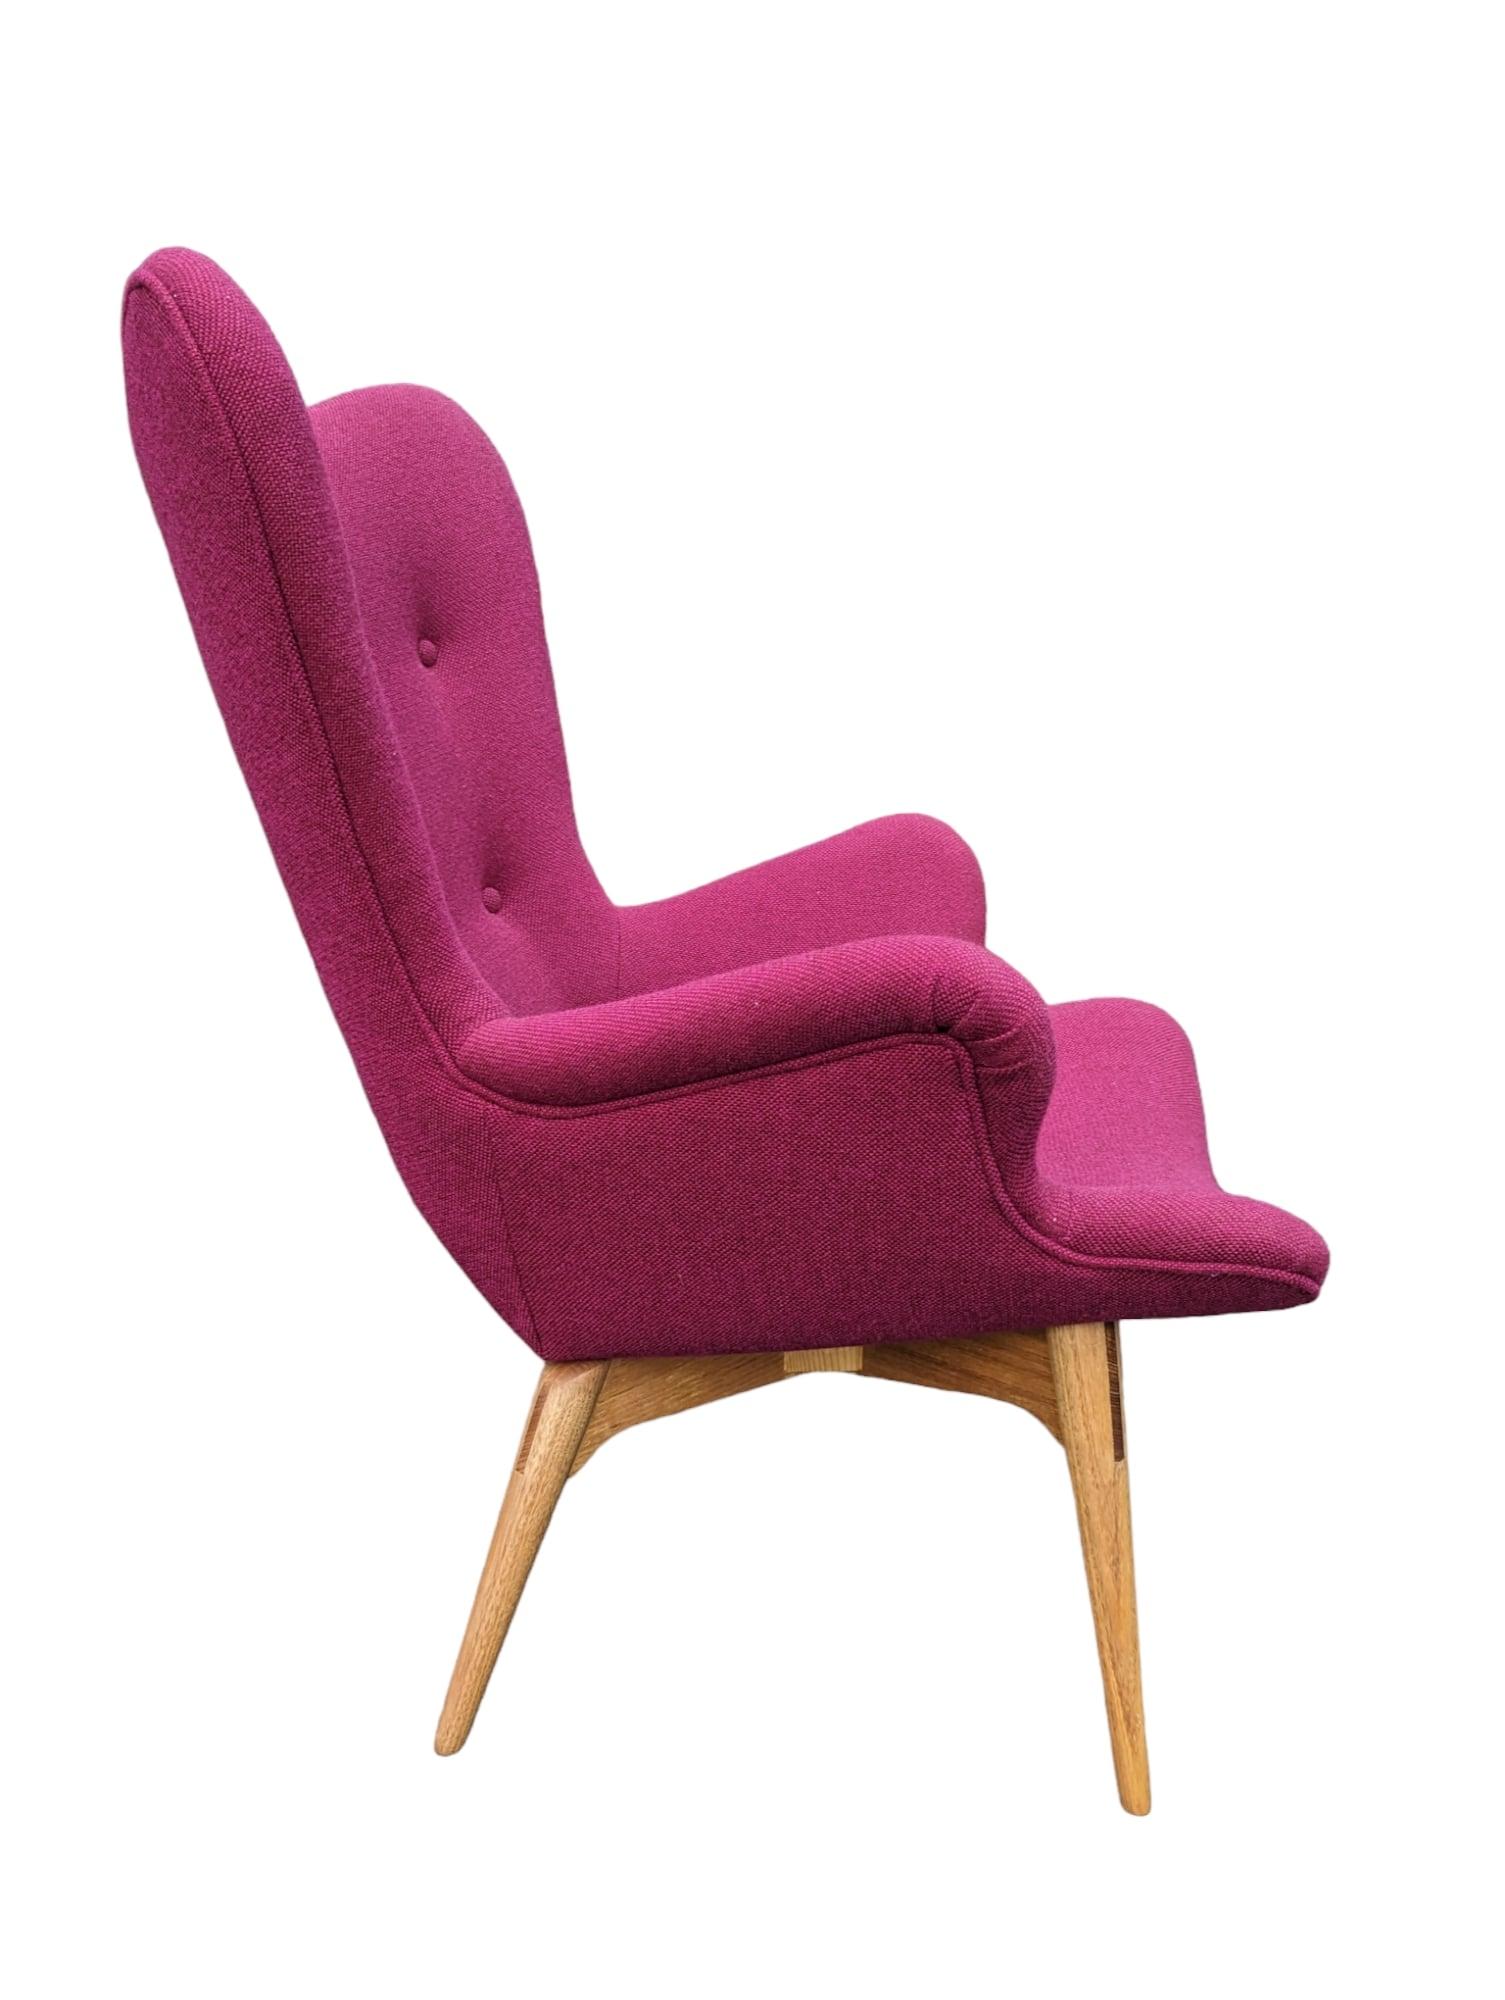 Description du produit Titre :
Que dire de cette chaise contour Featherston R160 ? Il s'agit d'un fauteuil original entièrement restauré qui est une pièce australienne emblématique et rare de MCM. Certes, il existe d'autres chaises R160, mais